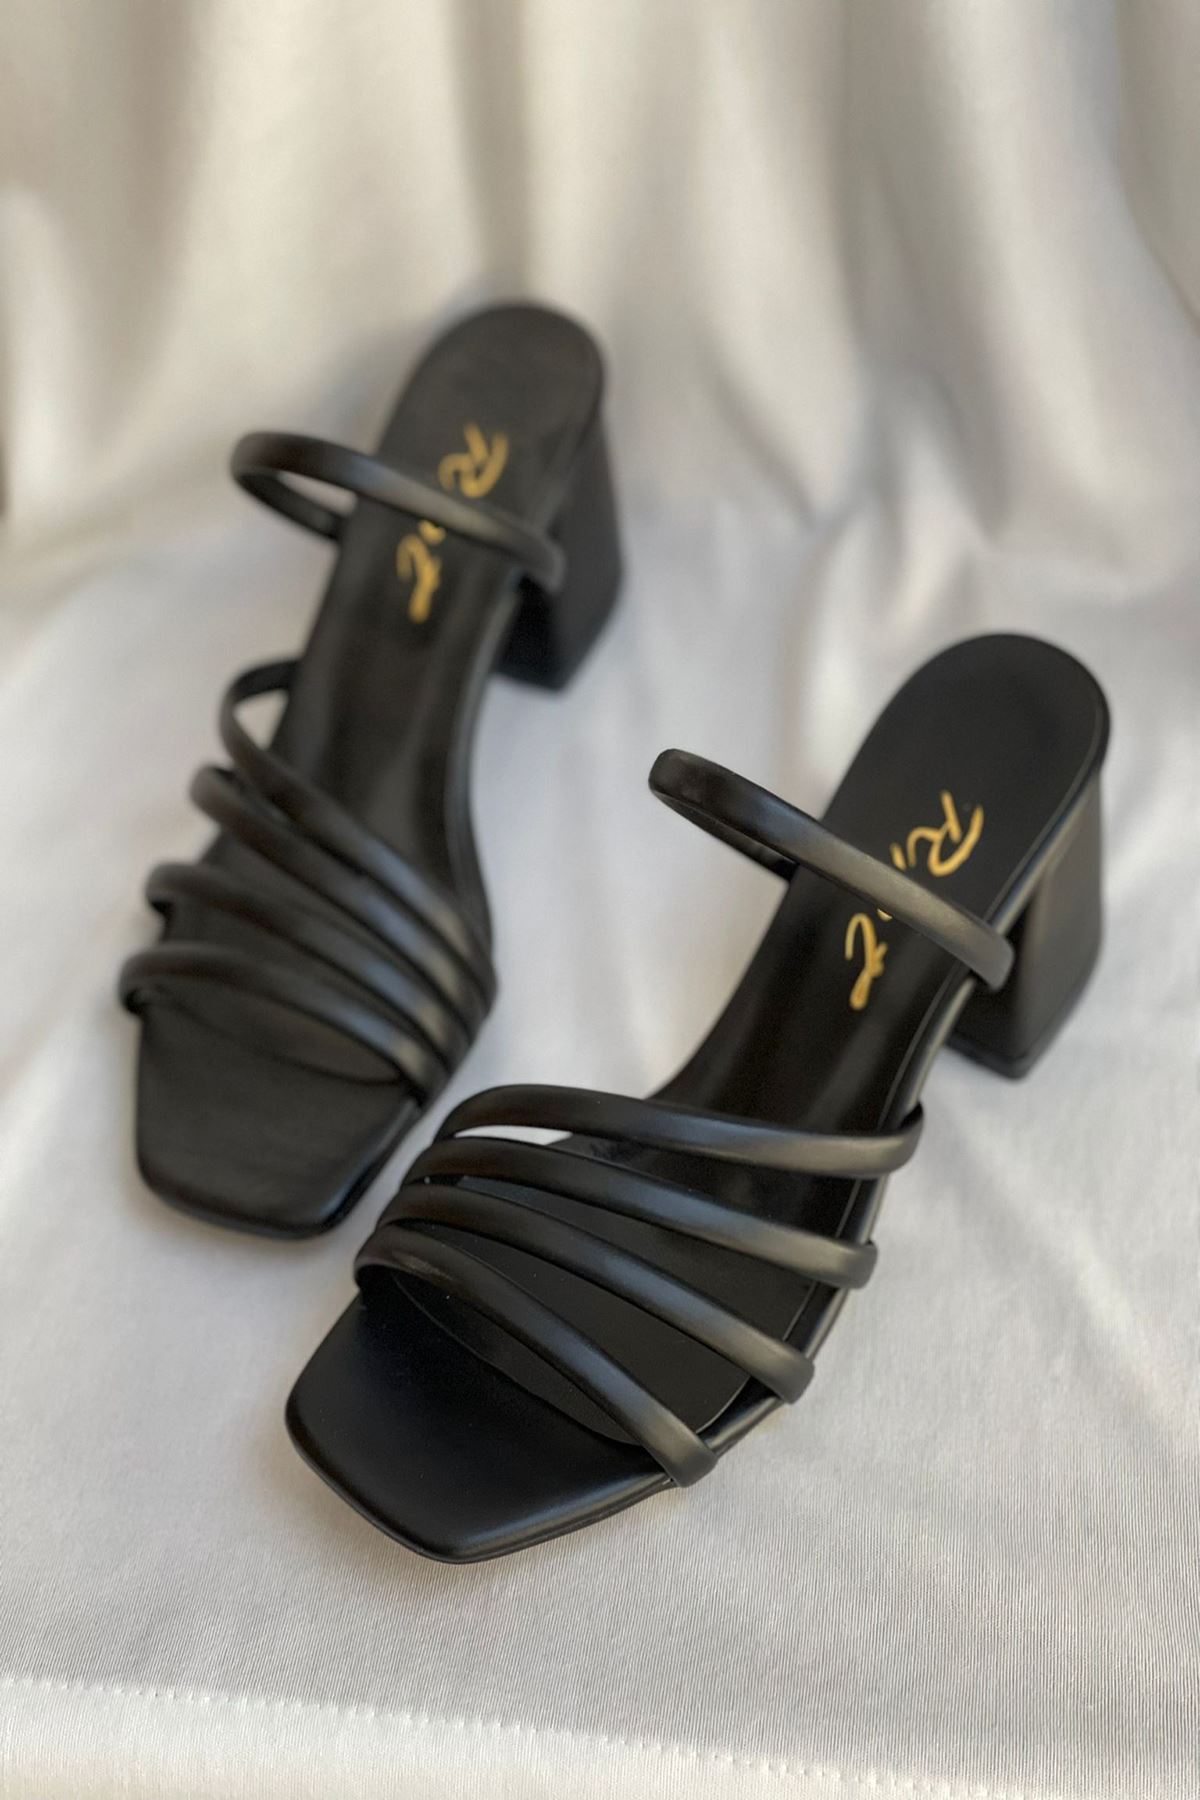 Mida Shoes Y910 Siyah Deri 4 Bant Topuklu Ayakkabı